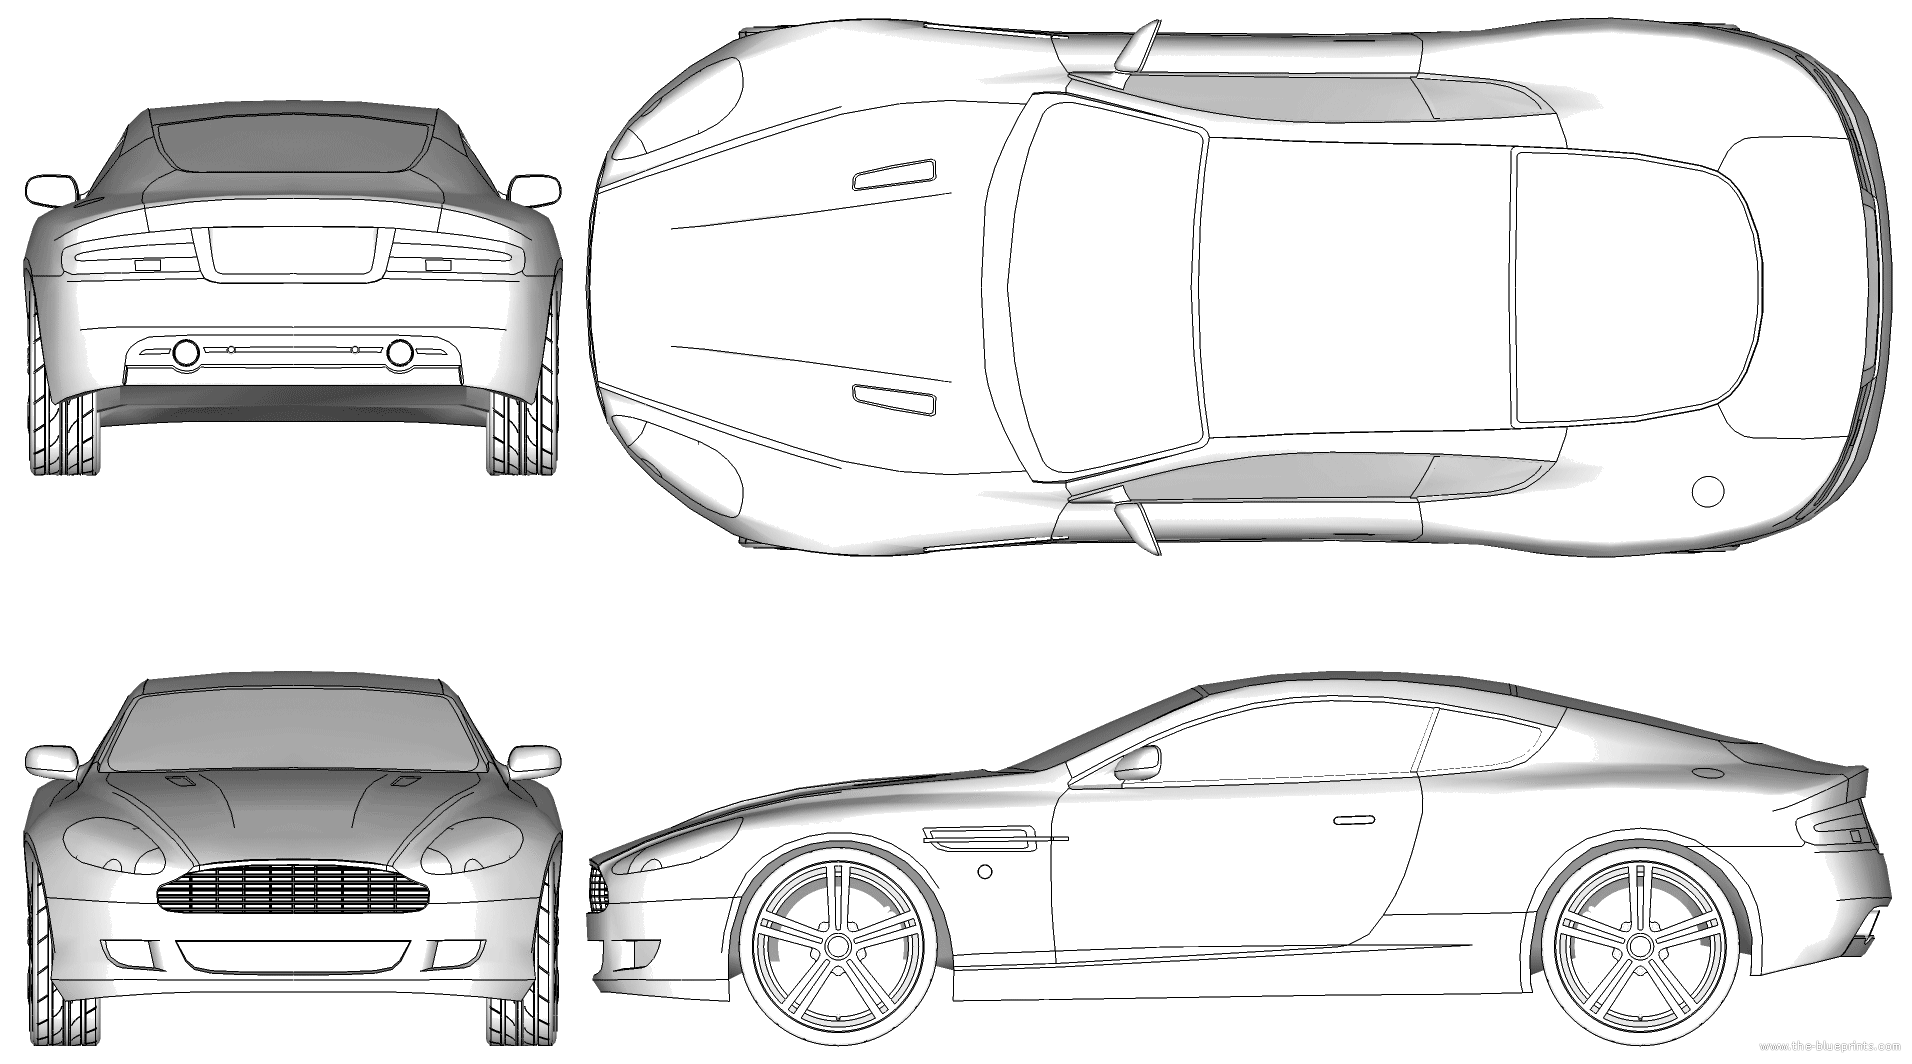 Aston Martin Vector by nak139